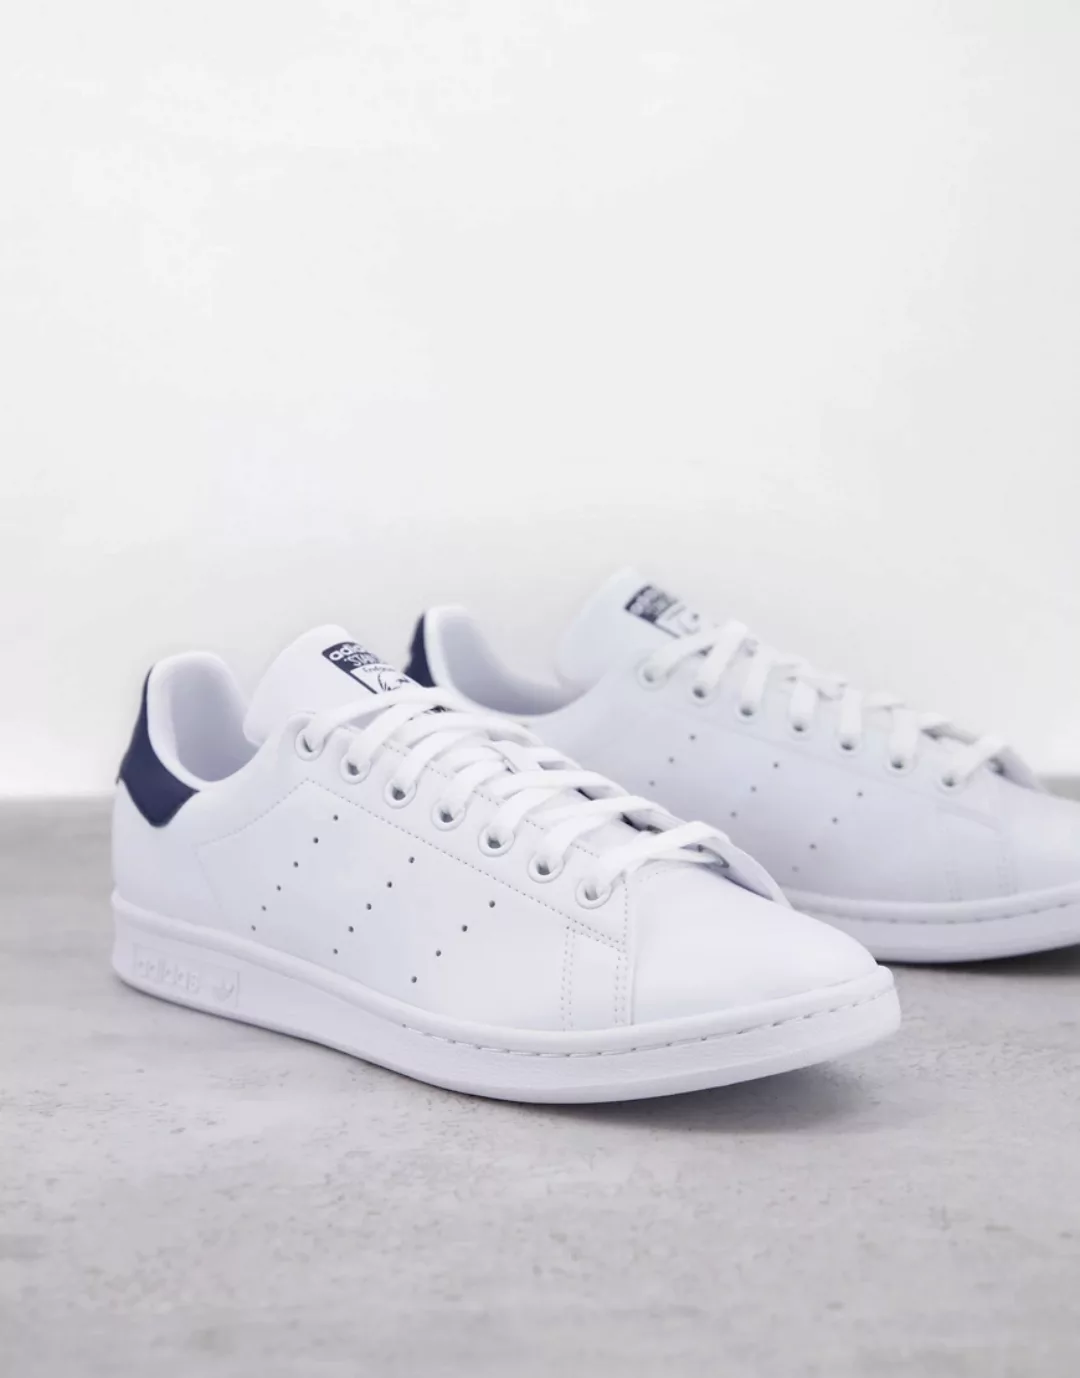 Adidas Originals Stan Smith Sportschuhe EU 44 2/3 Ftwr White / Ftwr White / günstig online kaufen